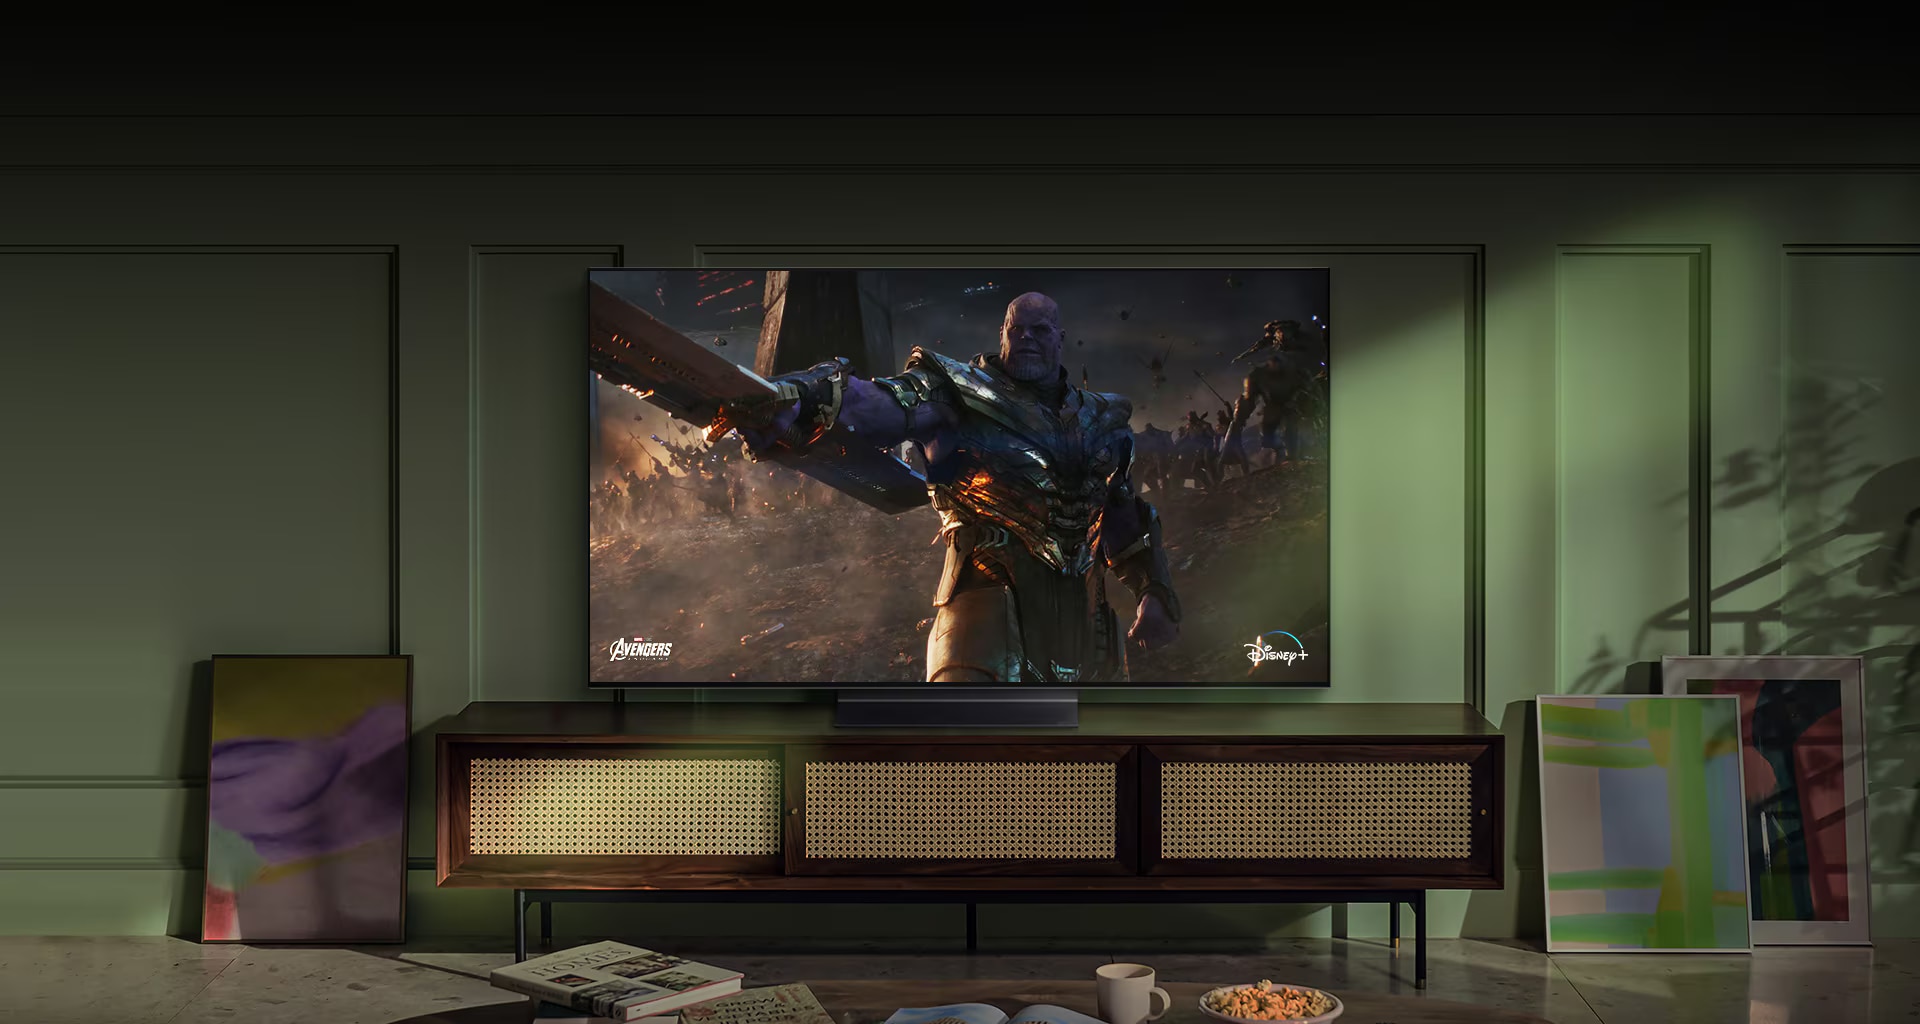 En stor väggmonterad LG OLED-TV visar en scen ur en actionfilm